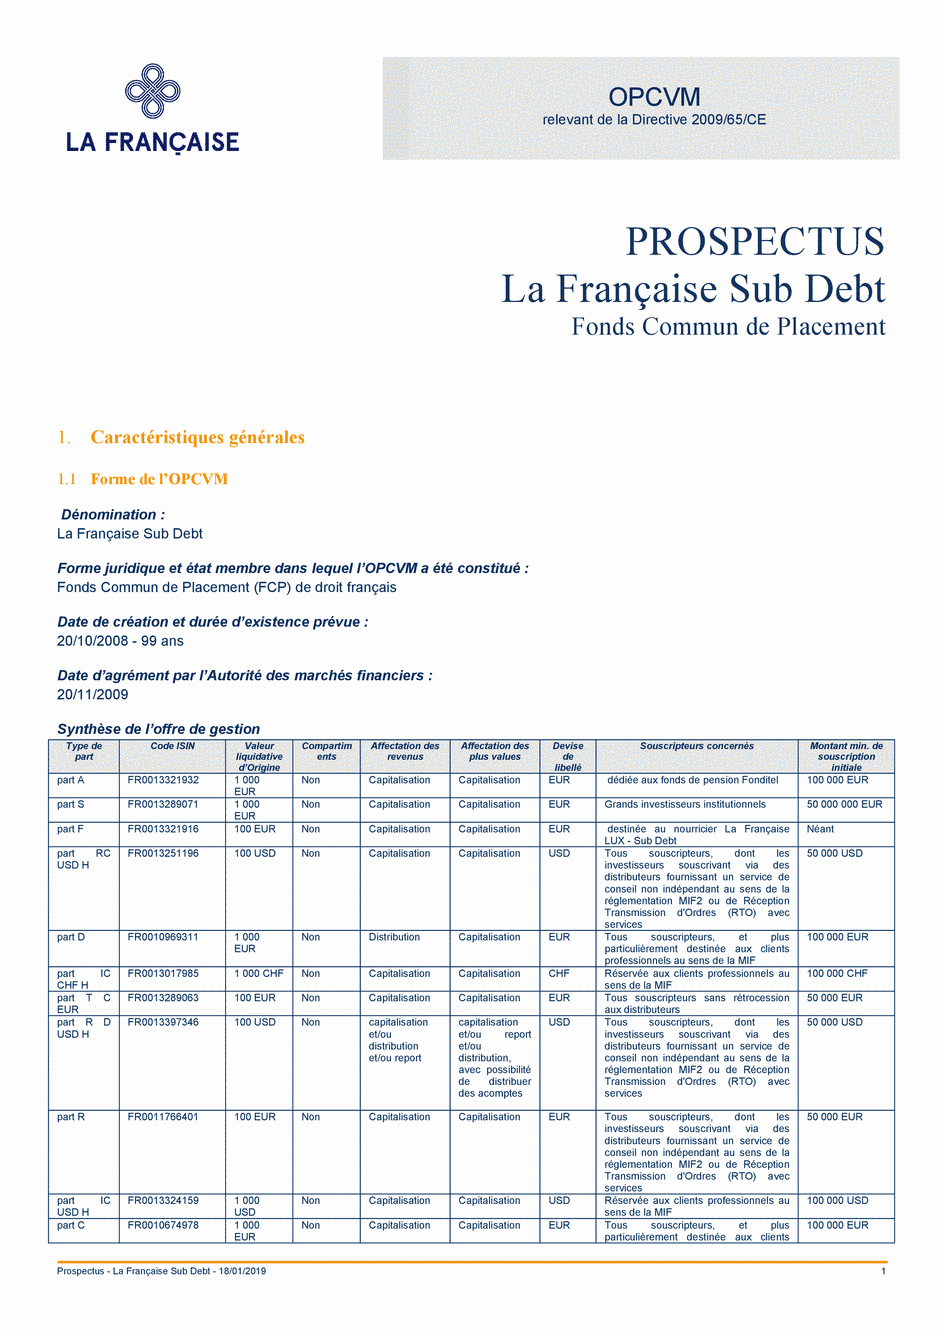 Prospectus La Française Sub Debt - Part TC USD H - 18/01/2019 - Français